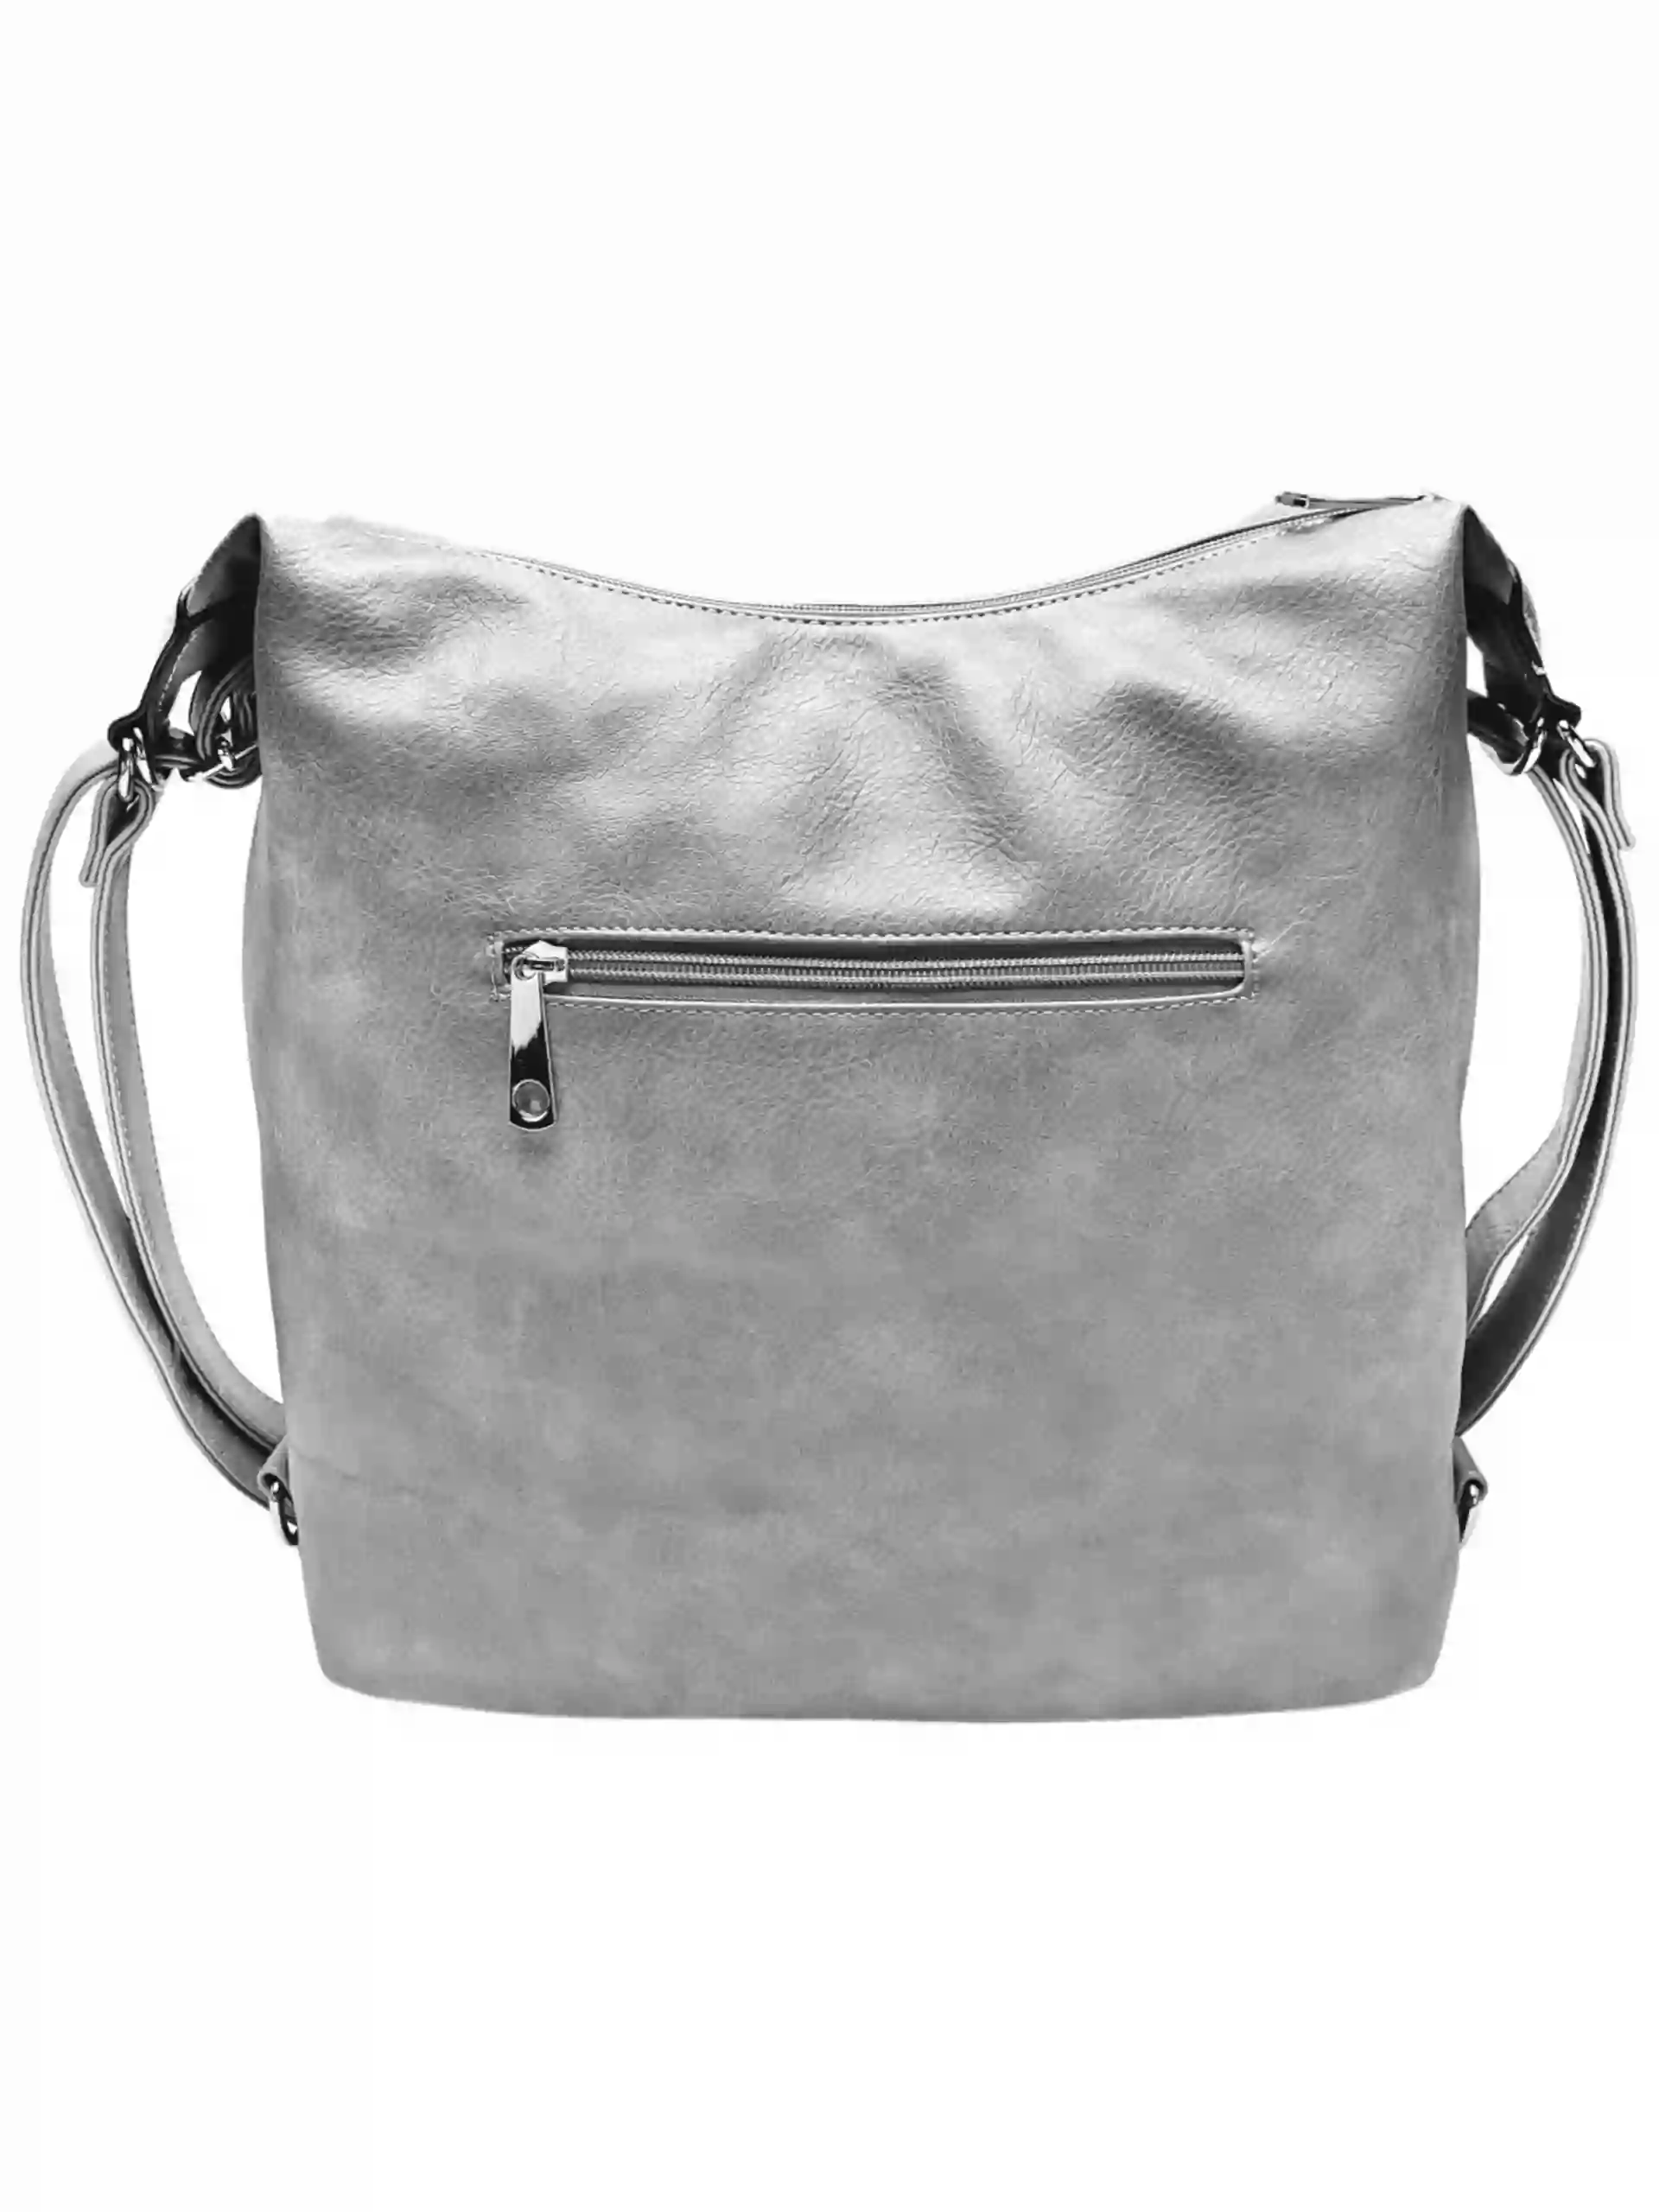 Velký světle šedý kabelko-batoh z eko kůže, Tapple, H18077, zadní strana kabelko-batohu 2v1